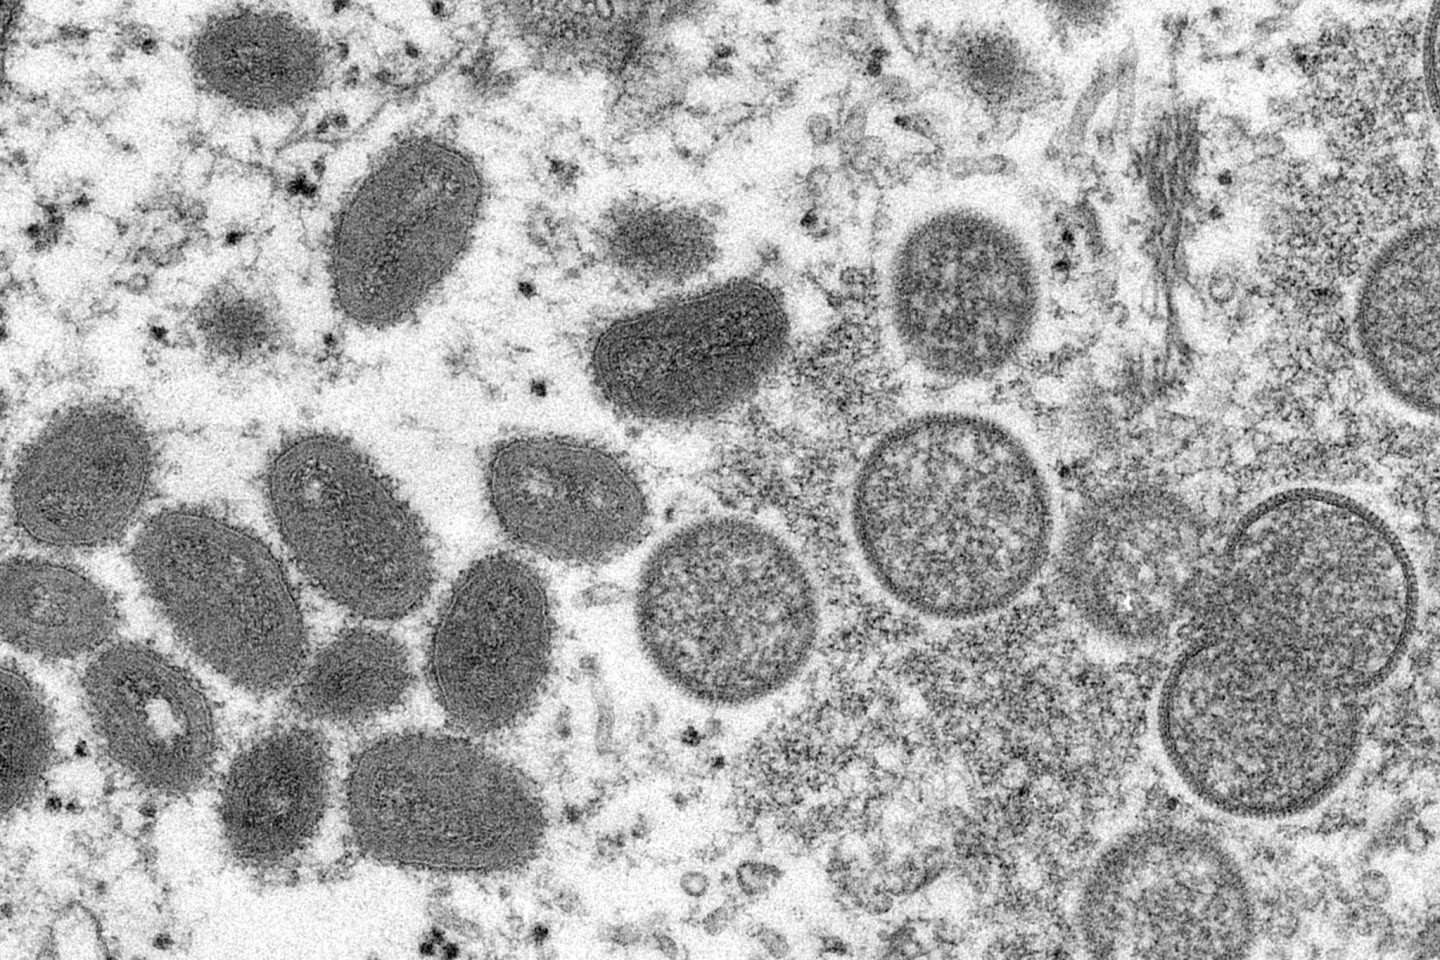 Reife, ovale Affenpockenviren (l) und kugelförmige unreife Virionen (r) aus einer menschlichen Hautprobe: Fälle der eigentlich seltenen Affenpocken werden mittlerweile in immer mehr Lände...